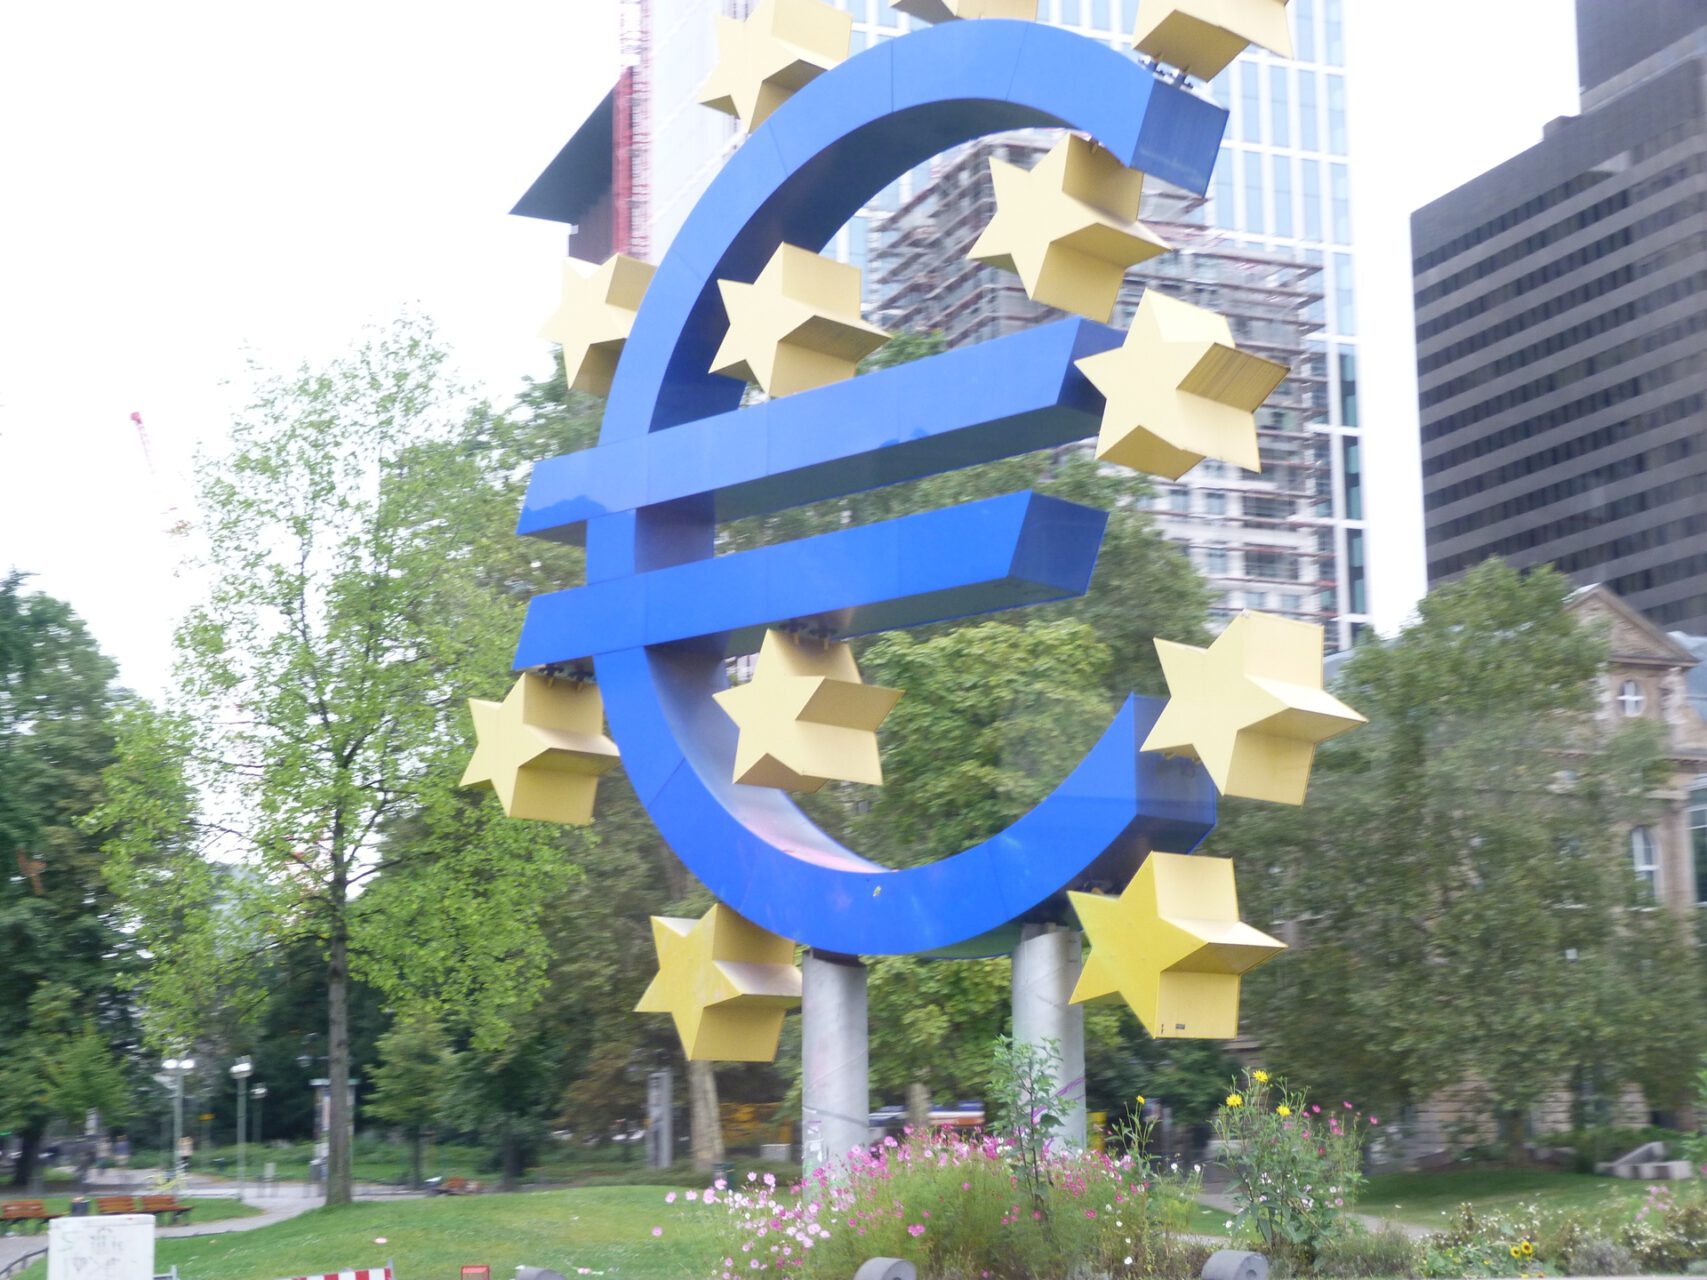 Euro-Symbol, Frankfurt am Main, gegenüber Schauspielhaus/Oper